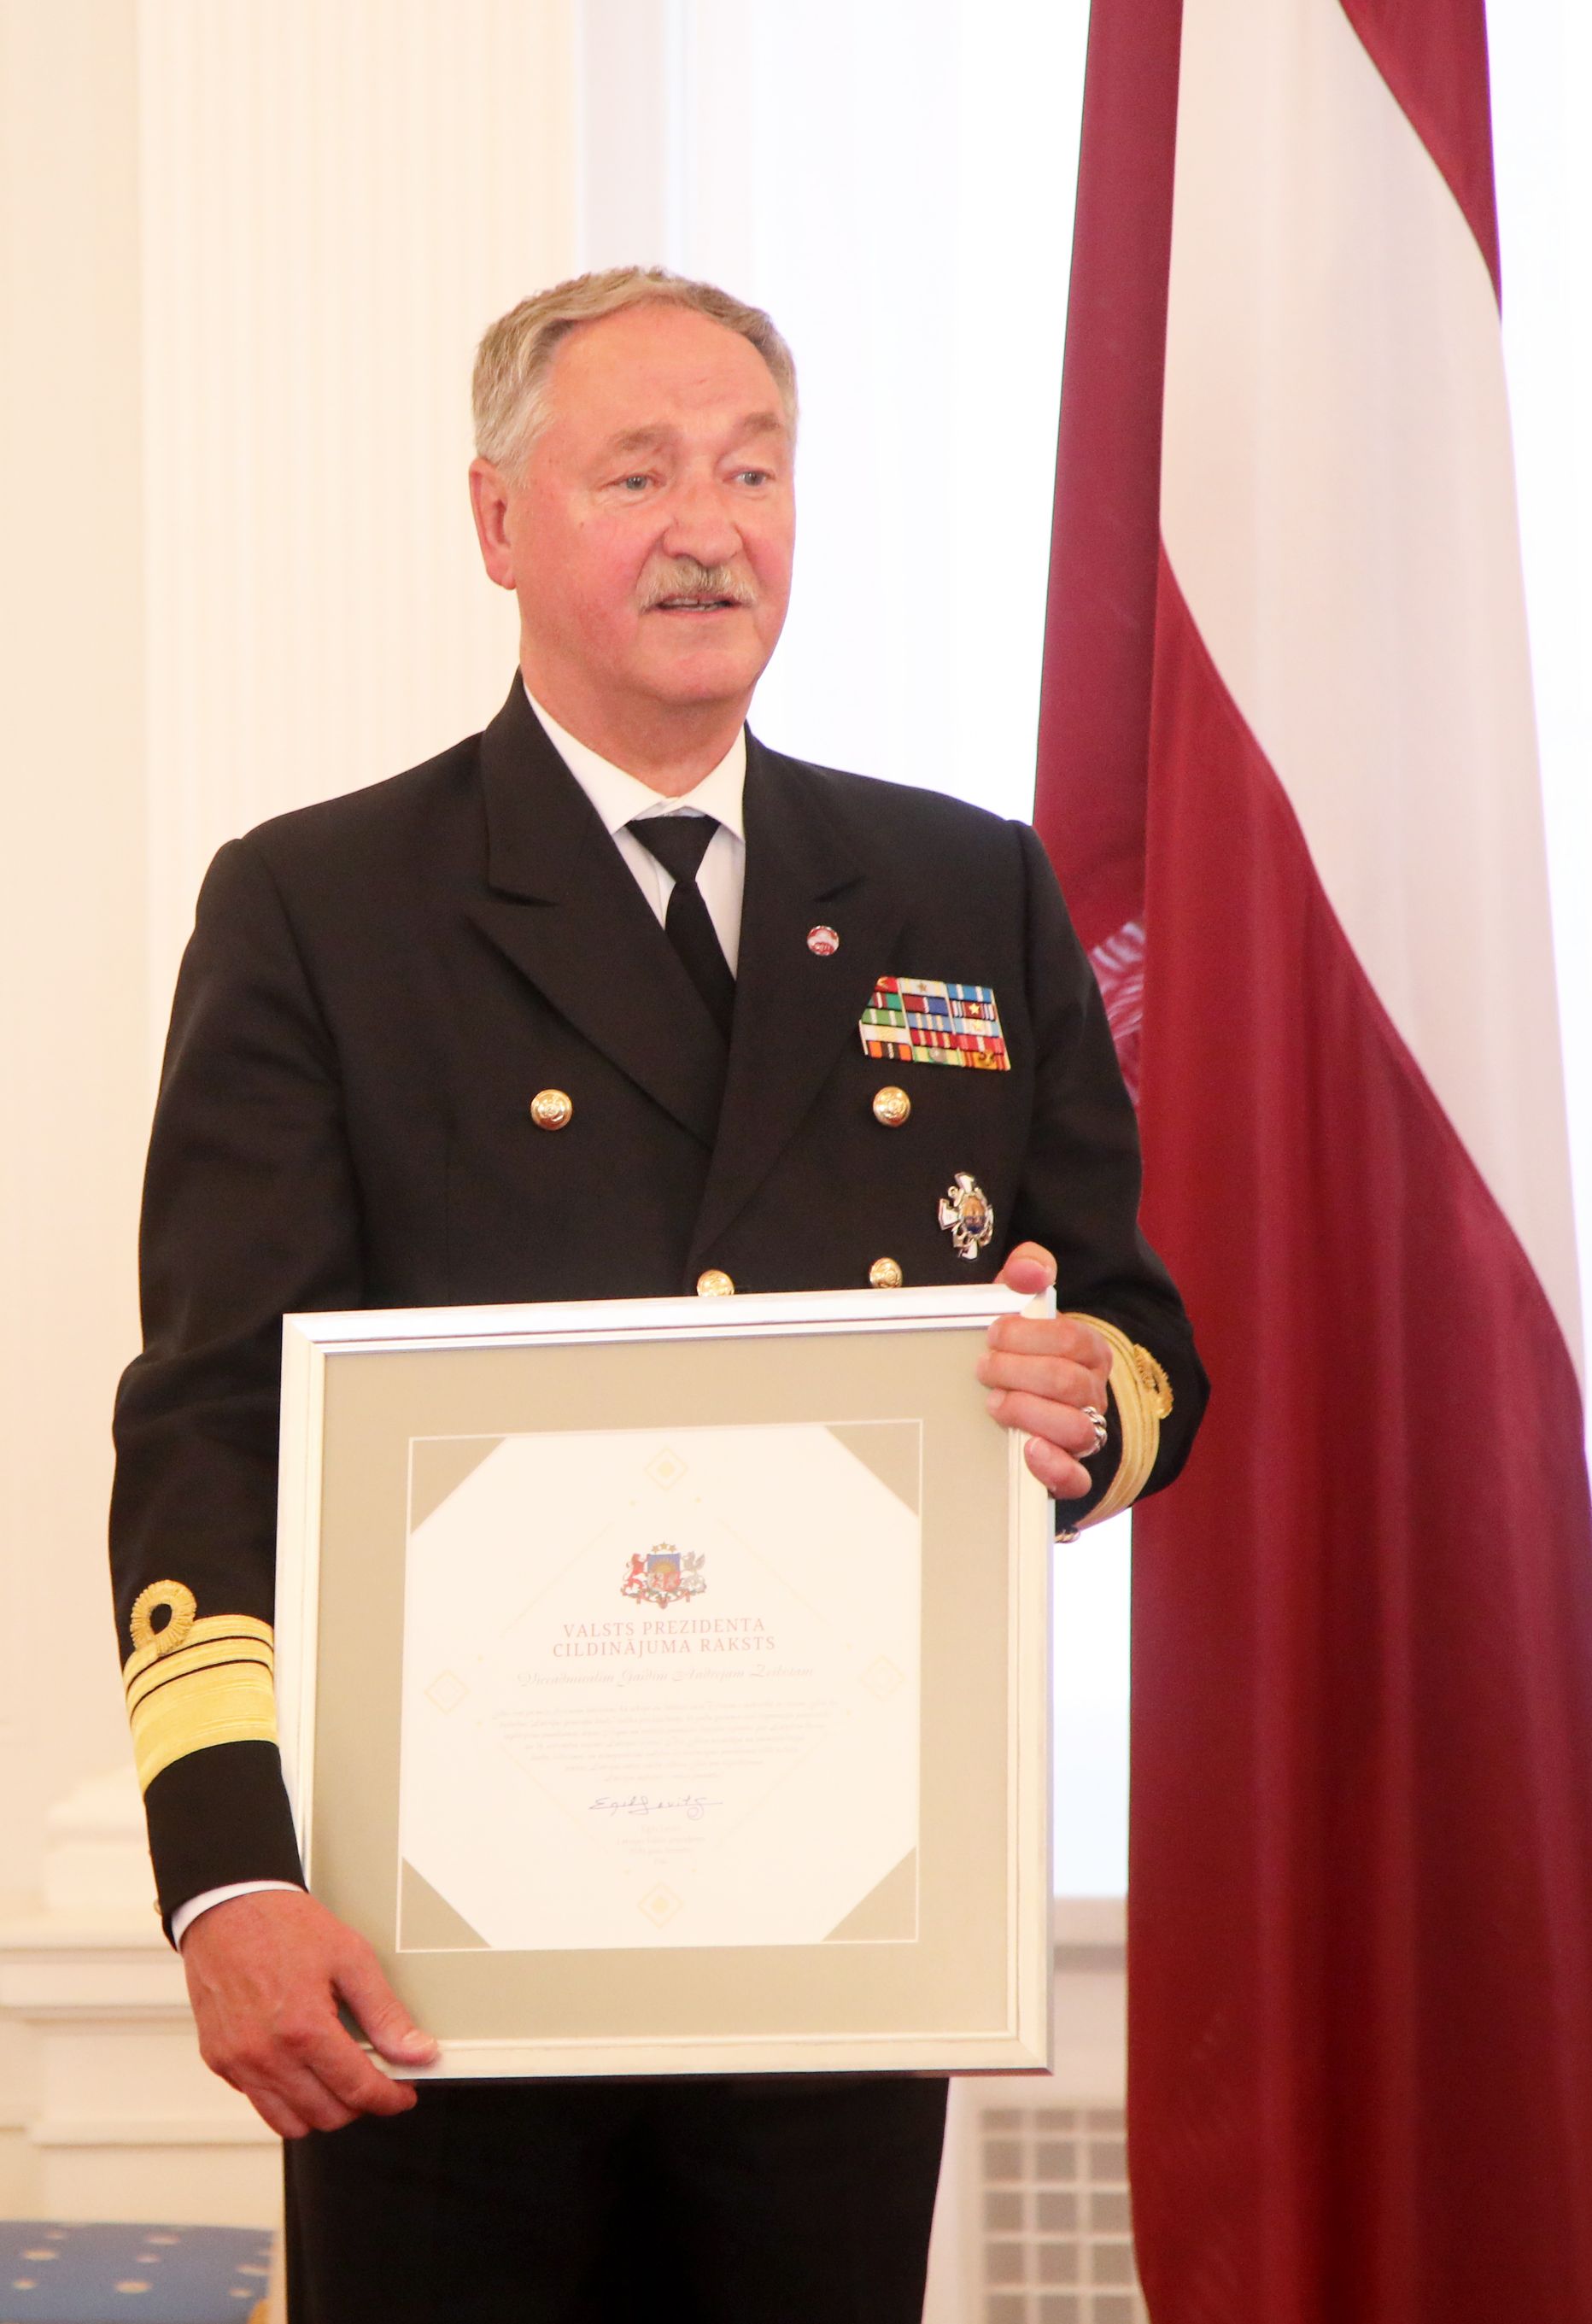 Viceadmirālis Gaidis Andrejs Zeibots saņemot Valsts prezidenta Cildinājuma rakstu Rīgas pilī.